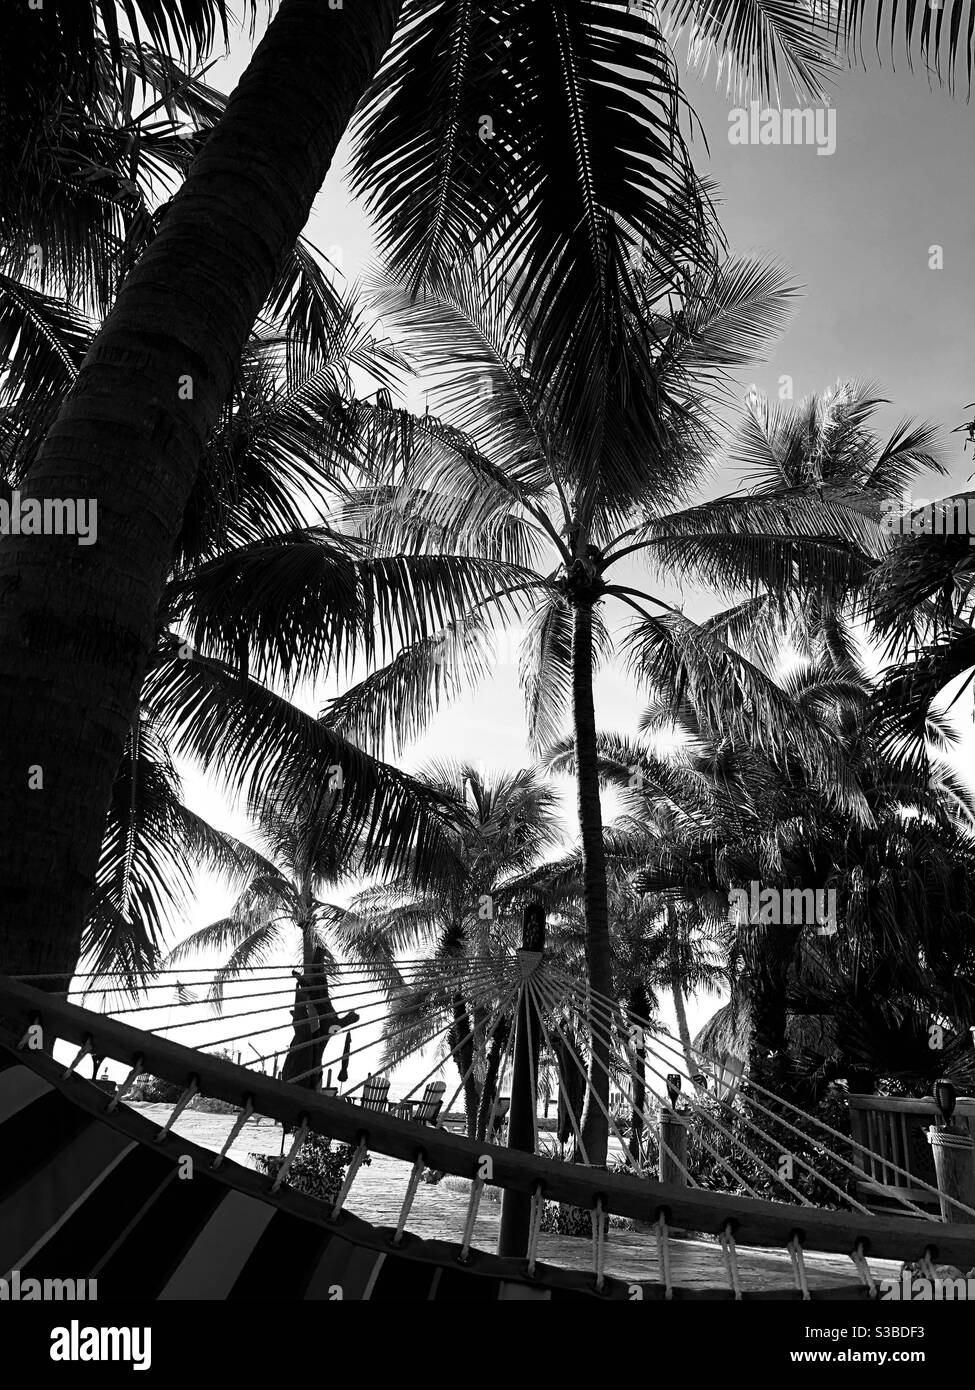 Fotografia in bianco e nero che si affaccia sulle palme da un'amaca. Foto Stock